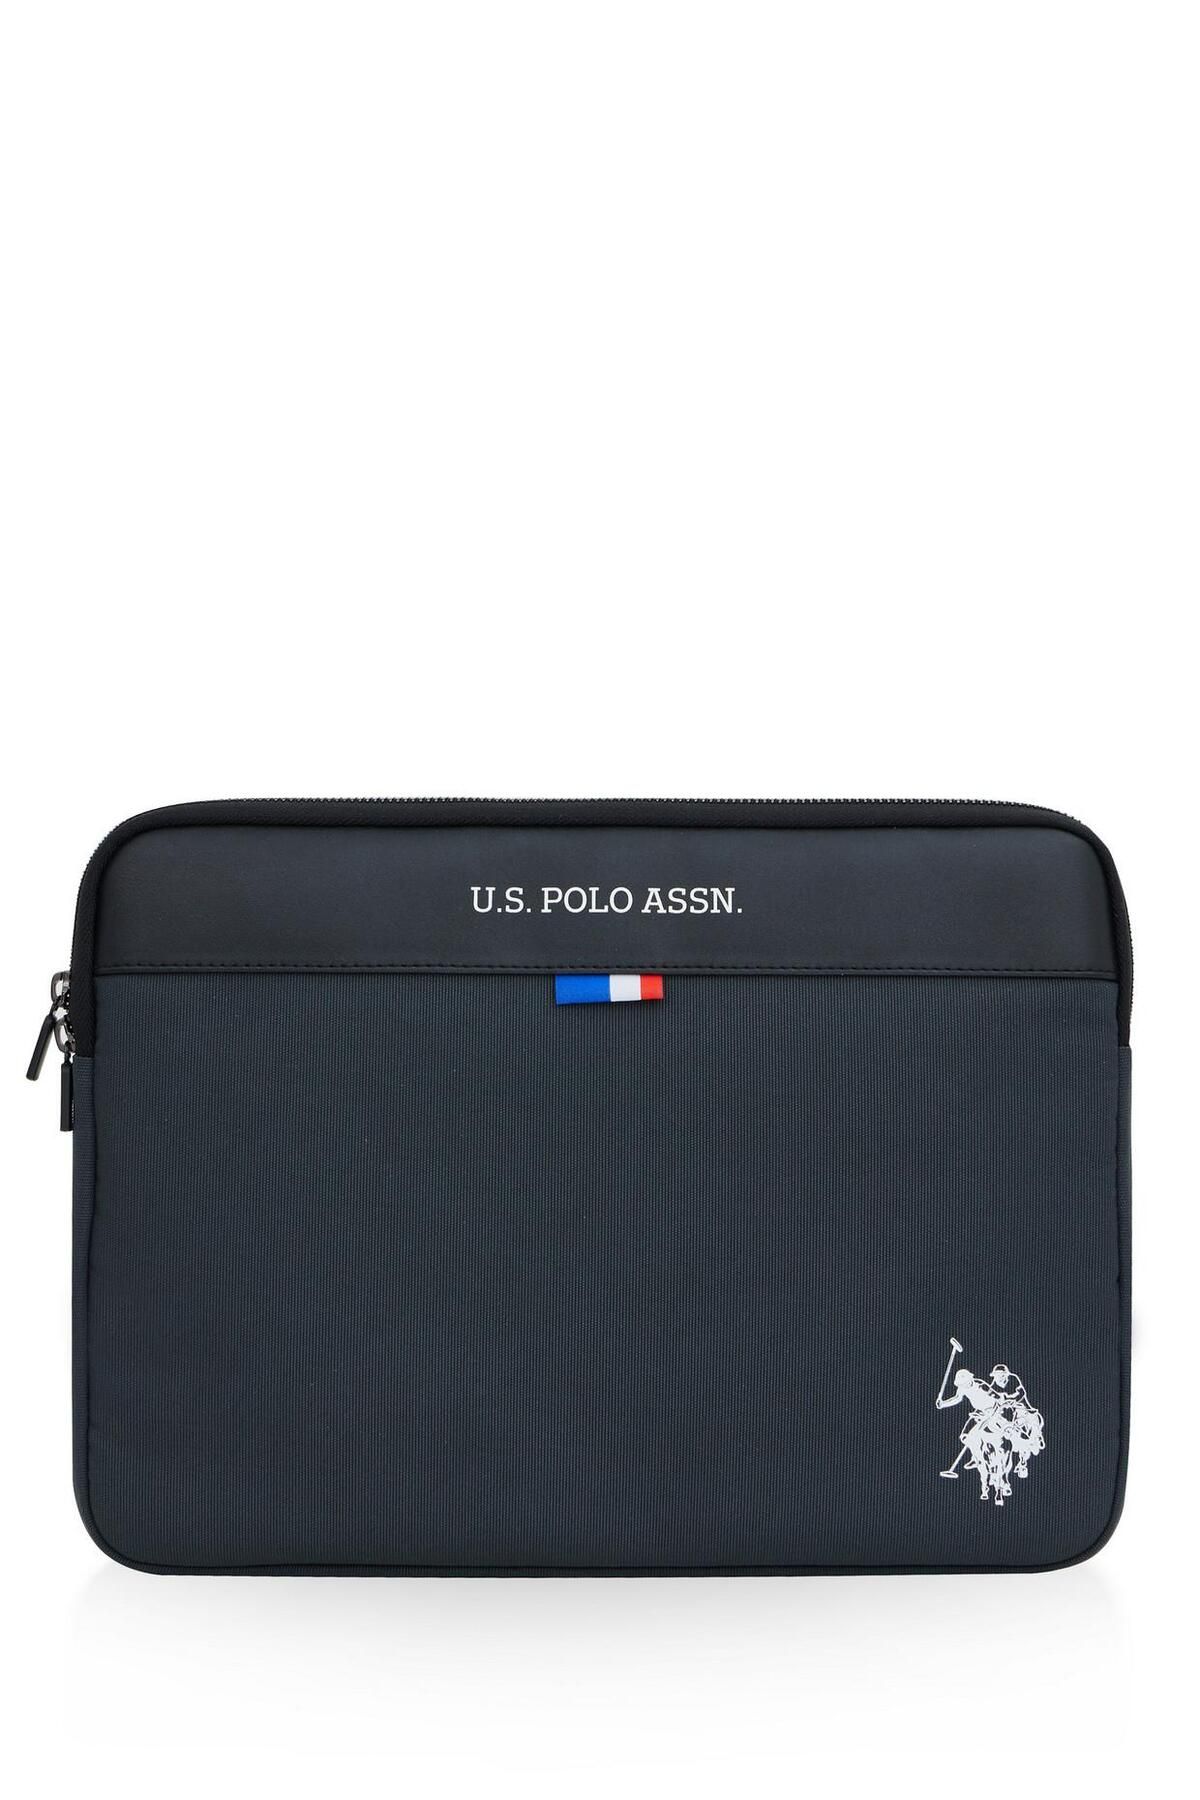 U.S. Polo Assn. U.S. POLO ASSN. PLEVR23700 Gri Unisex Tablet Çantası